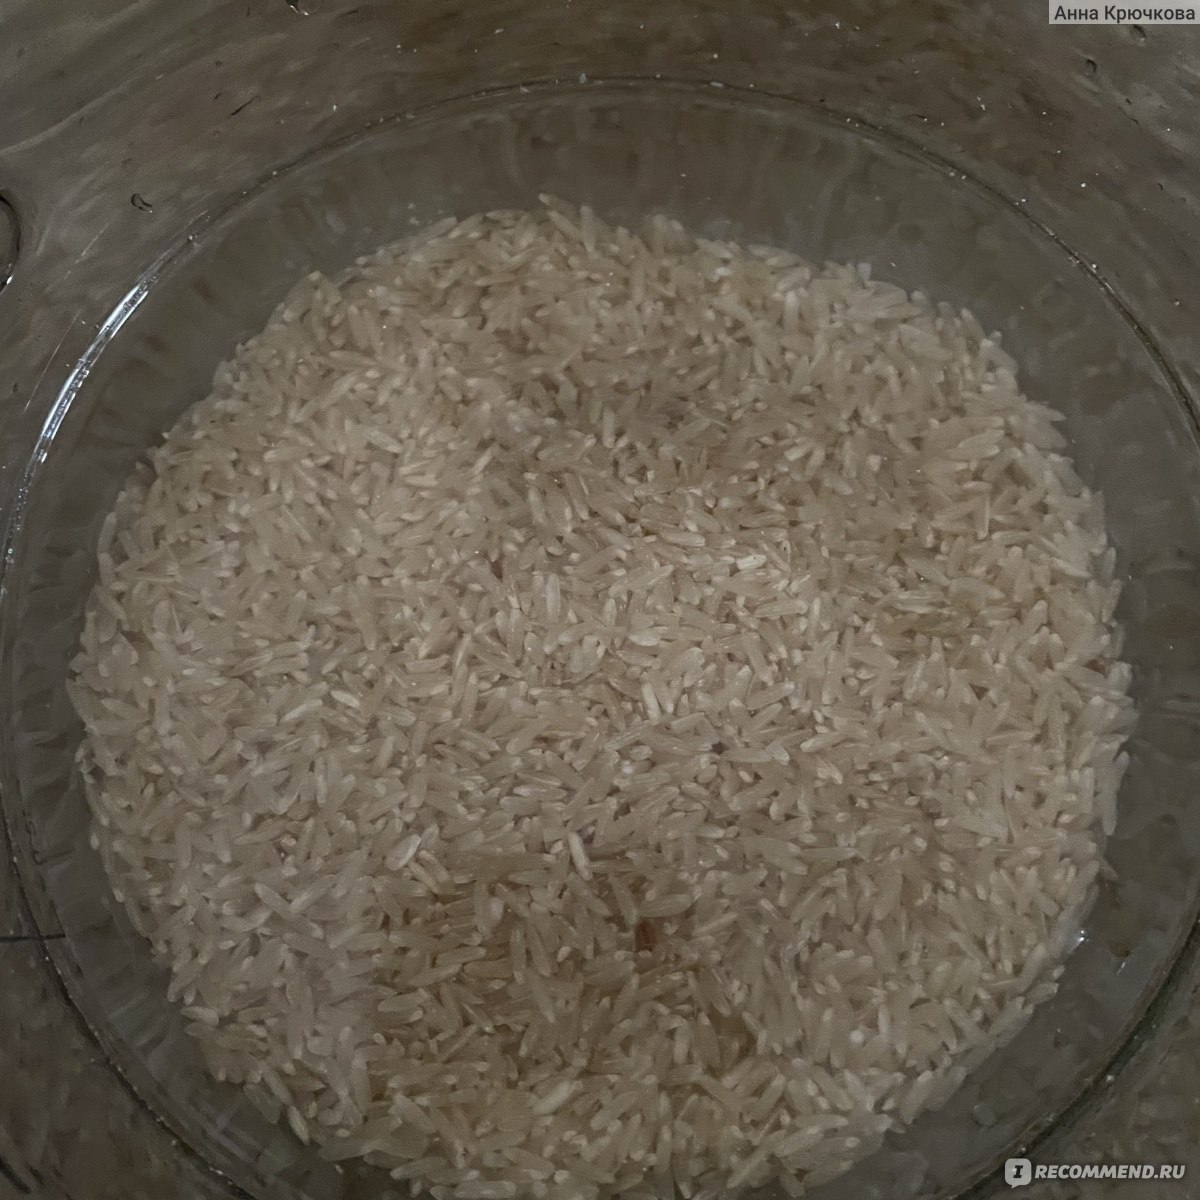 Нешлифованный рис фото